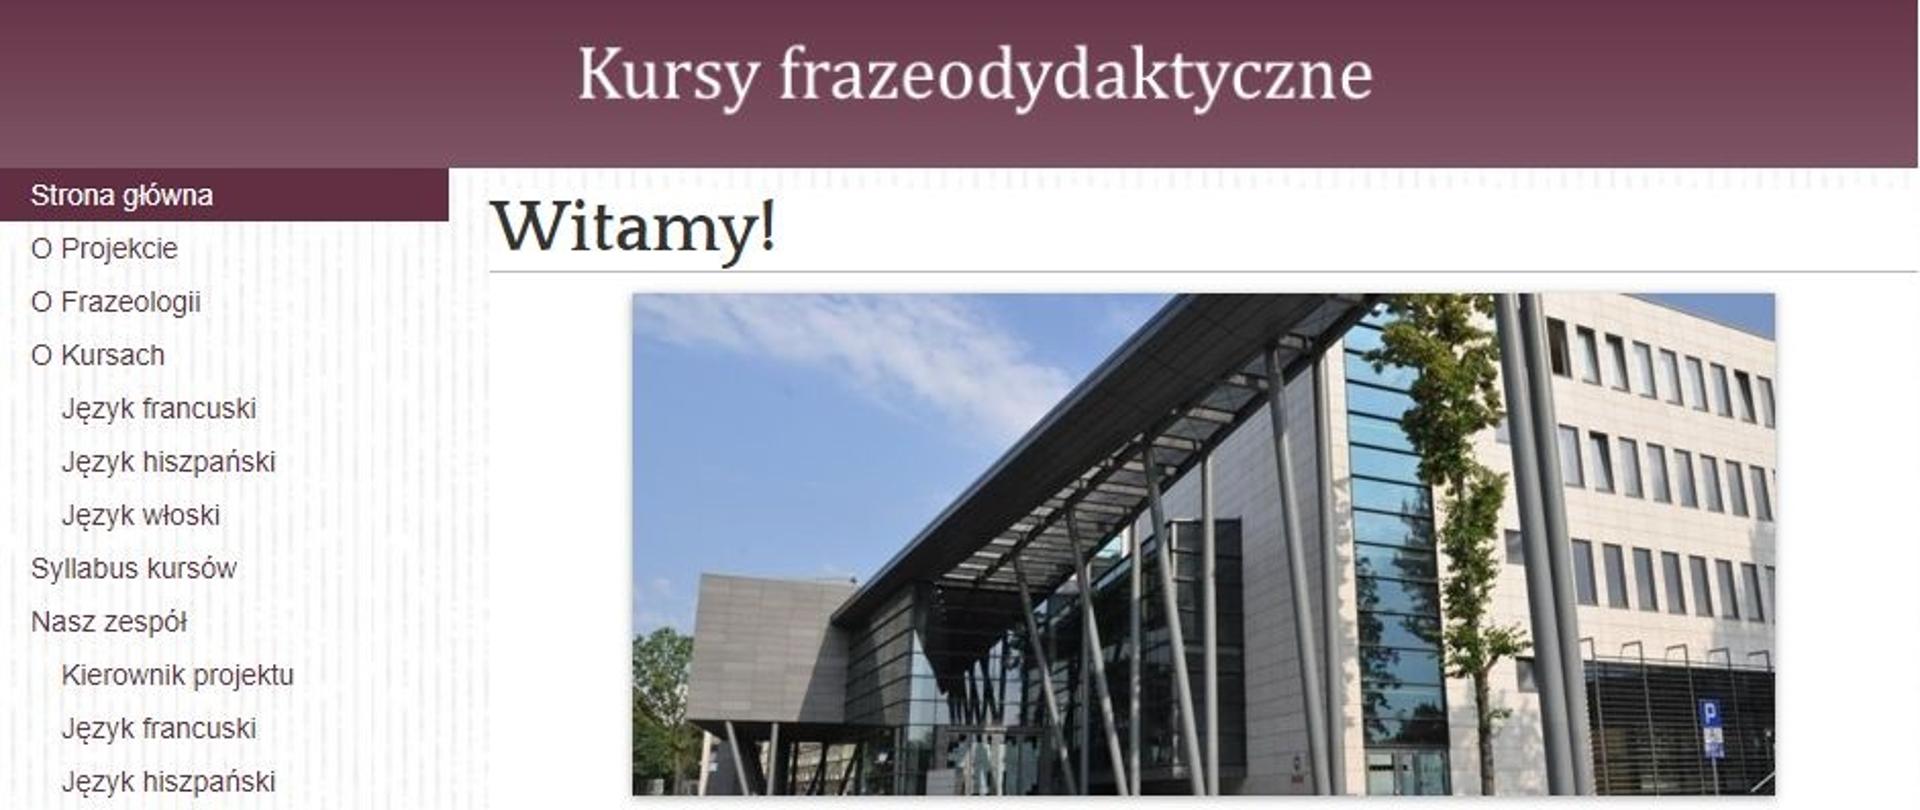 Strona internetowa projektu: www.kursyfrazeo.us.edu.pl.